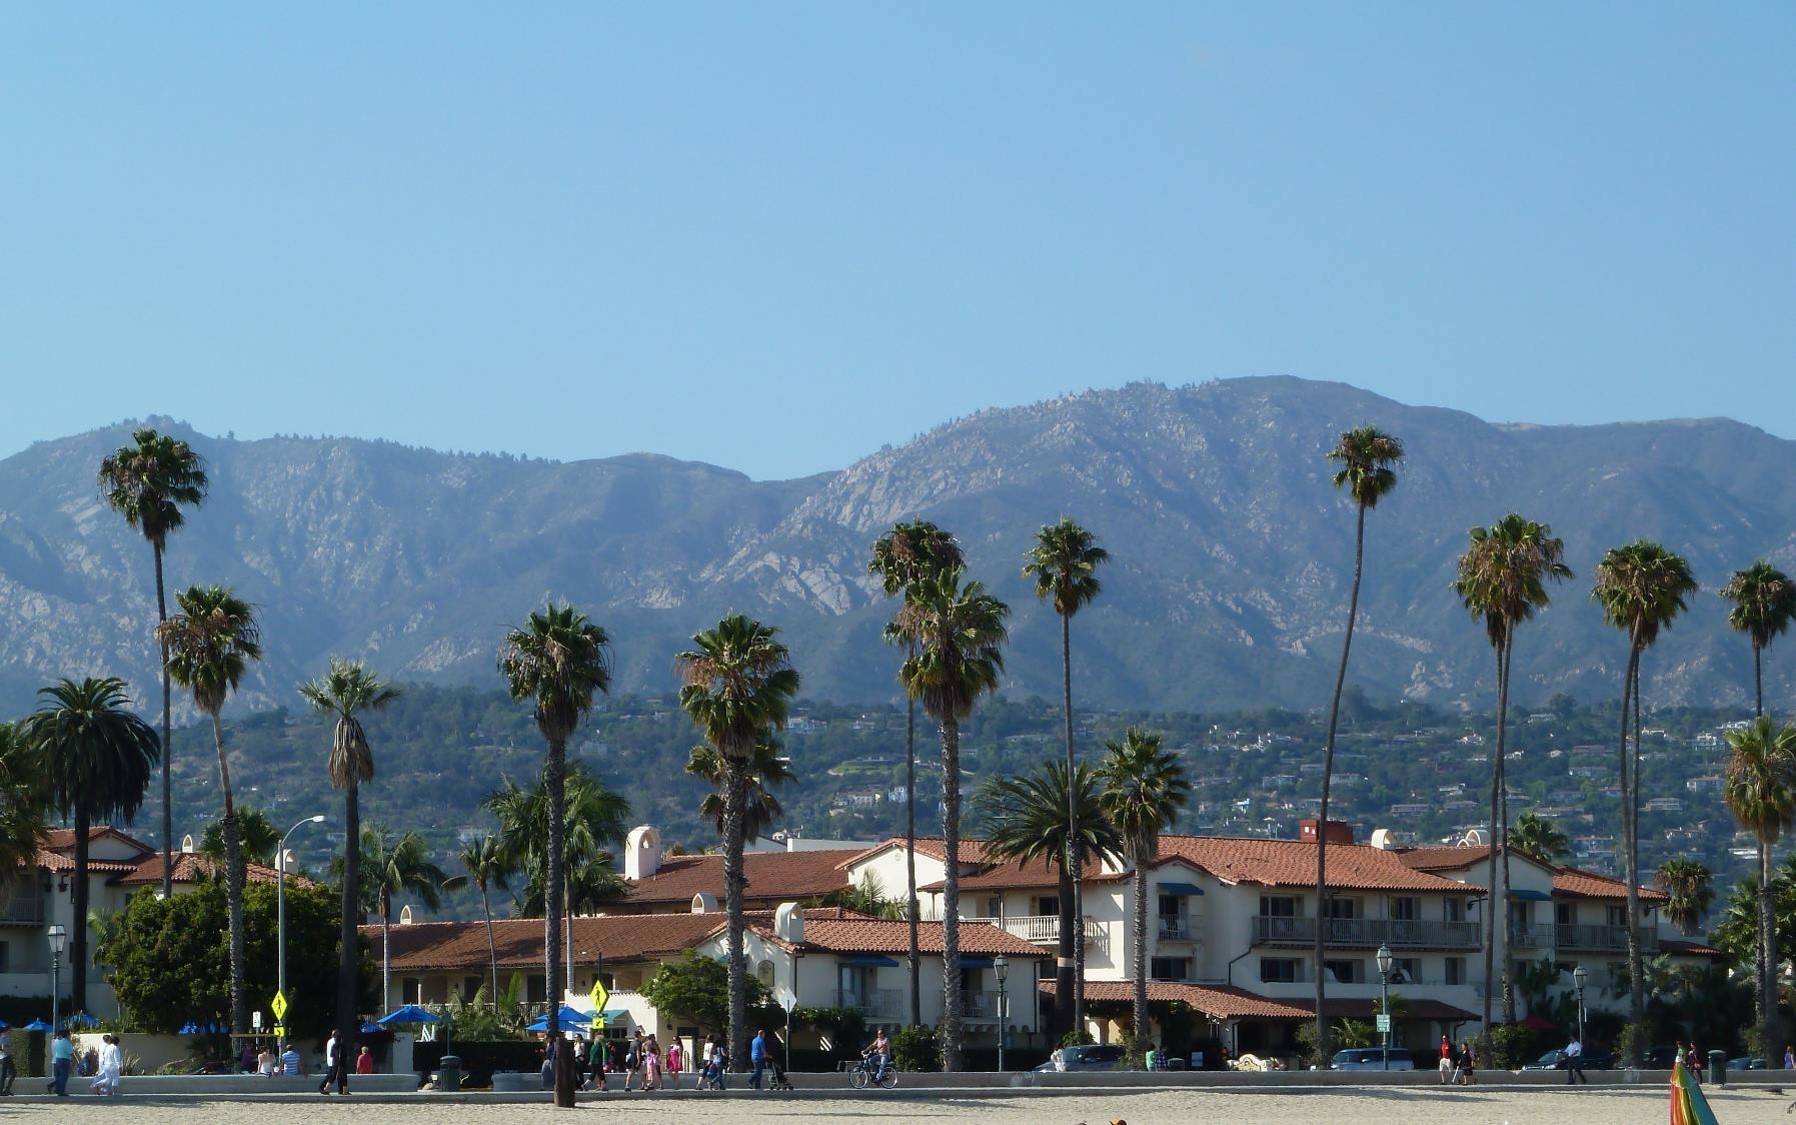 Santa Barbara (crédit photo Lhom)